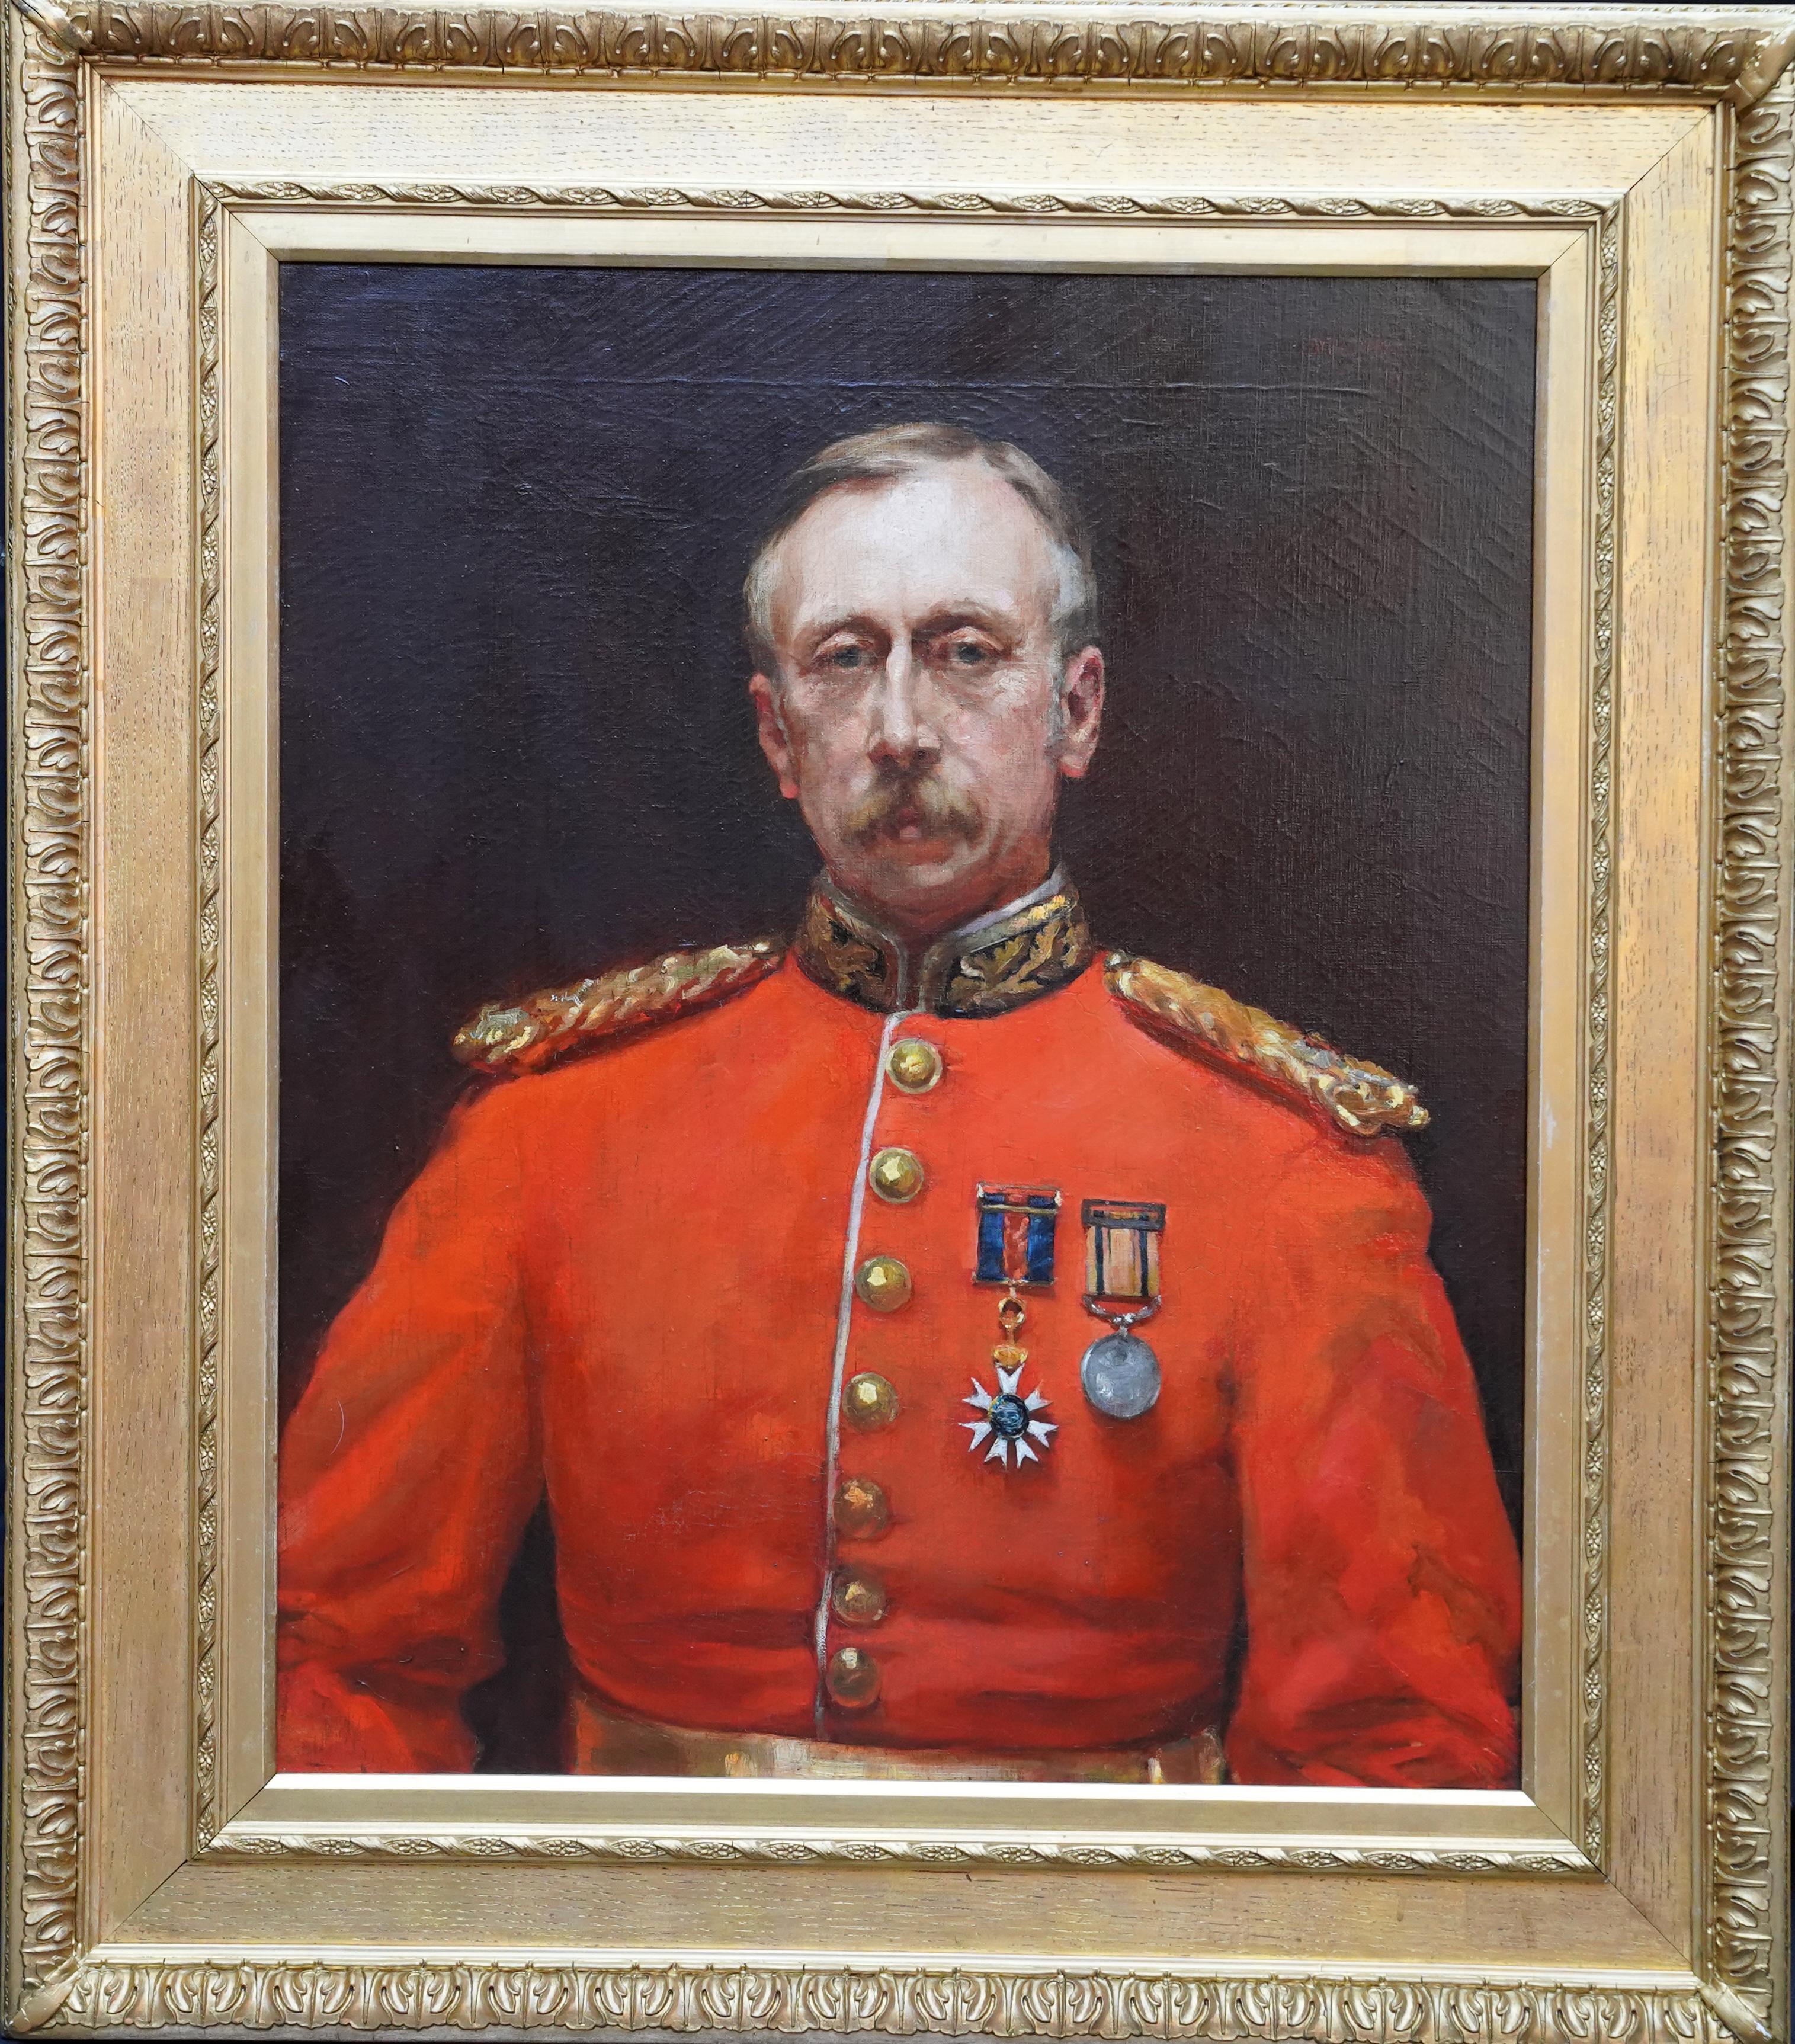 Portrait Painting Edyth Starkie - Portrait du major général Harding Steward - Peinture à l'huile militaire britannique du 19e siècle